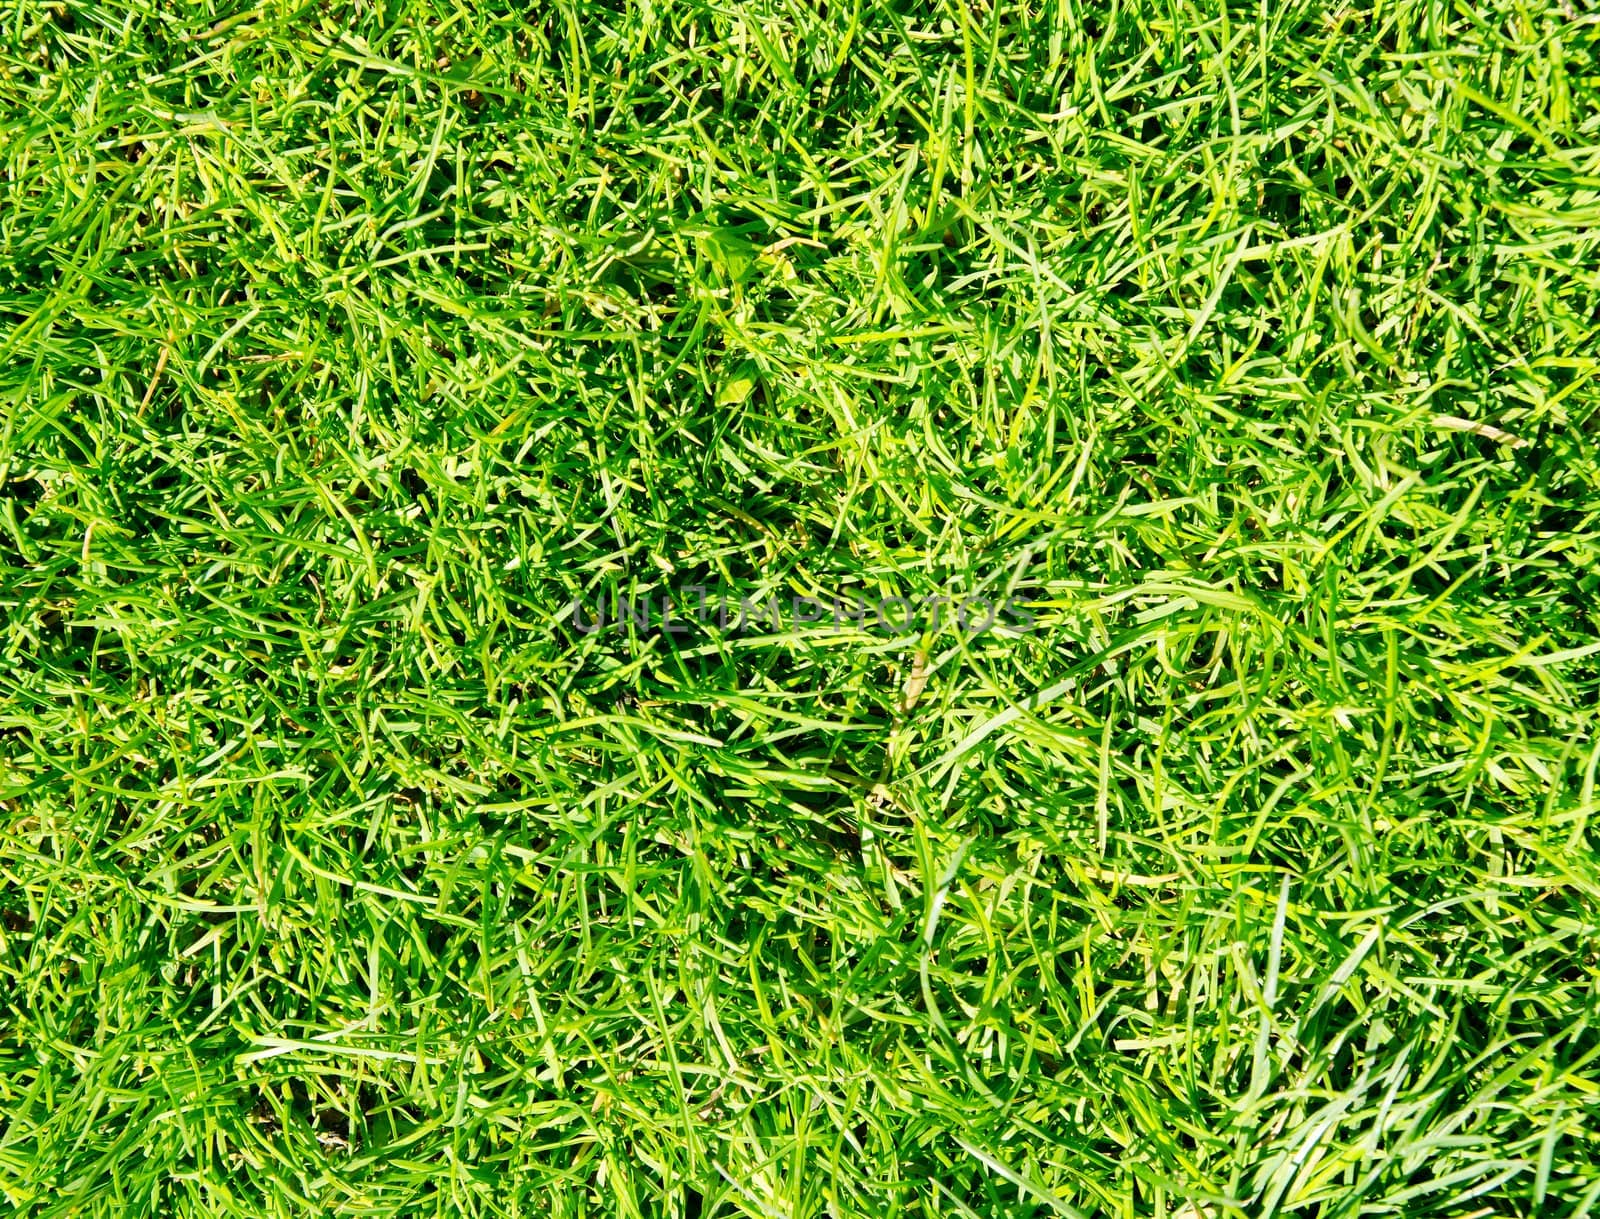 Green grass texture background